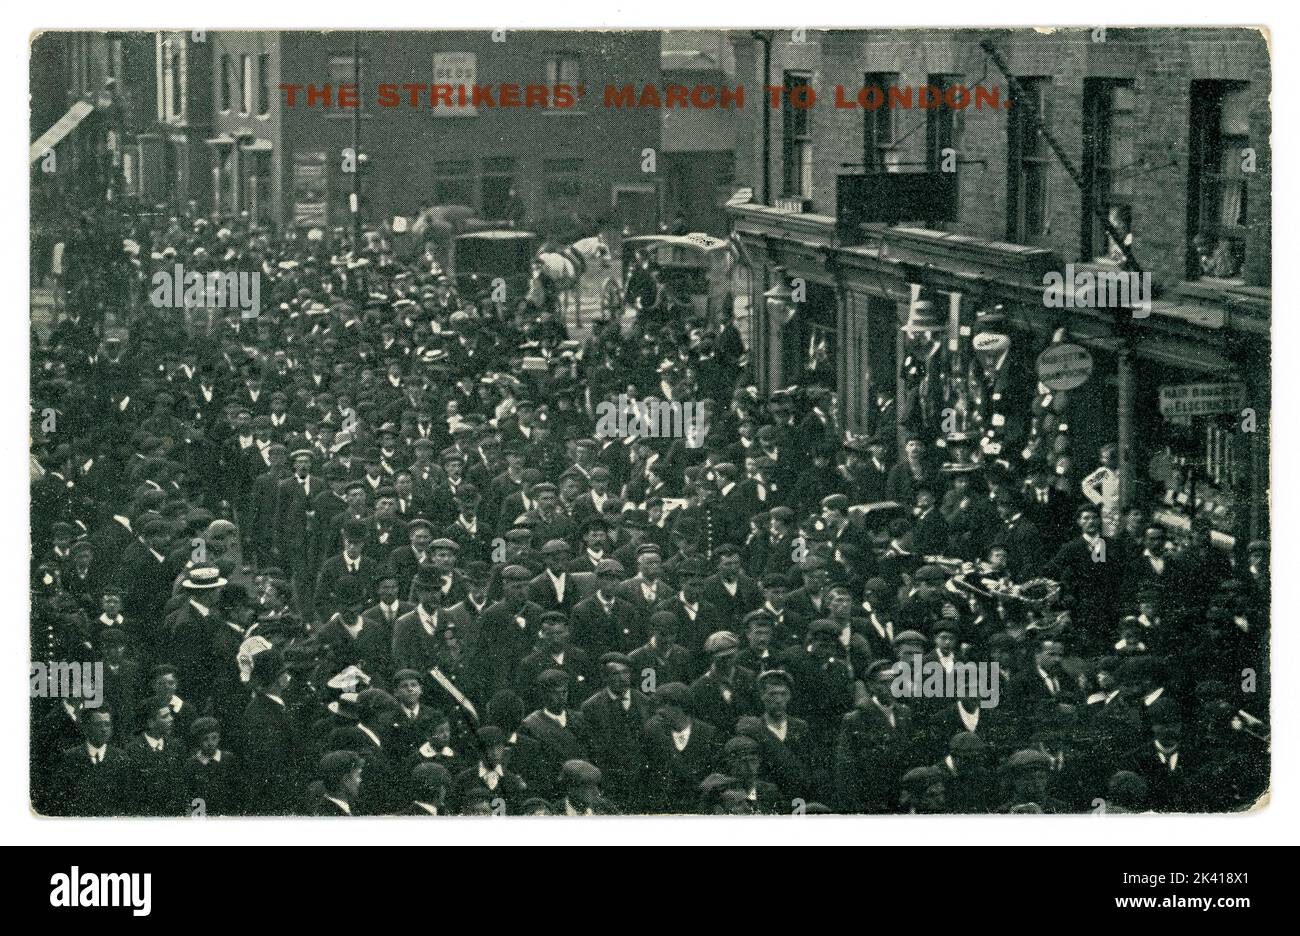 Originale cartolina dell'epoca edoardiana di impressionanti uomini della classe operaia. I bootmakers del Northamptonshire hanno marciato sull'ufficio di guerra camminando da Raunds vicino Wellingborough a Londra. I manifestanti sono stati guidati da Joe Gribble e la marcia è iniziata il 8th maggio 1905. REGNO UNITO Foto Stock